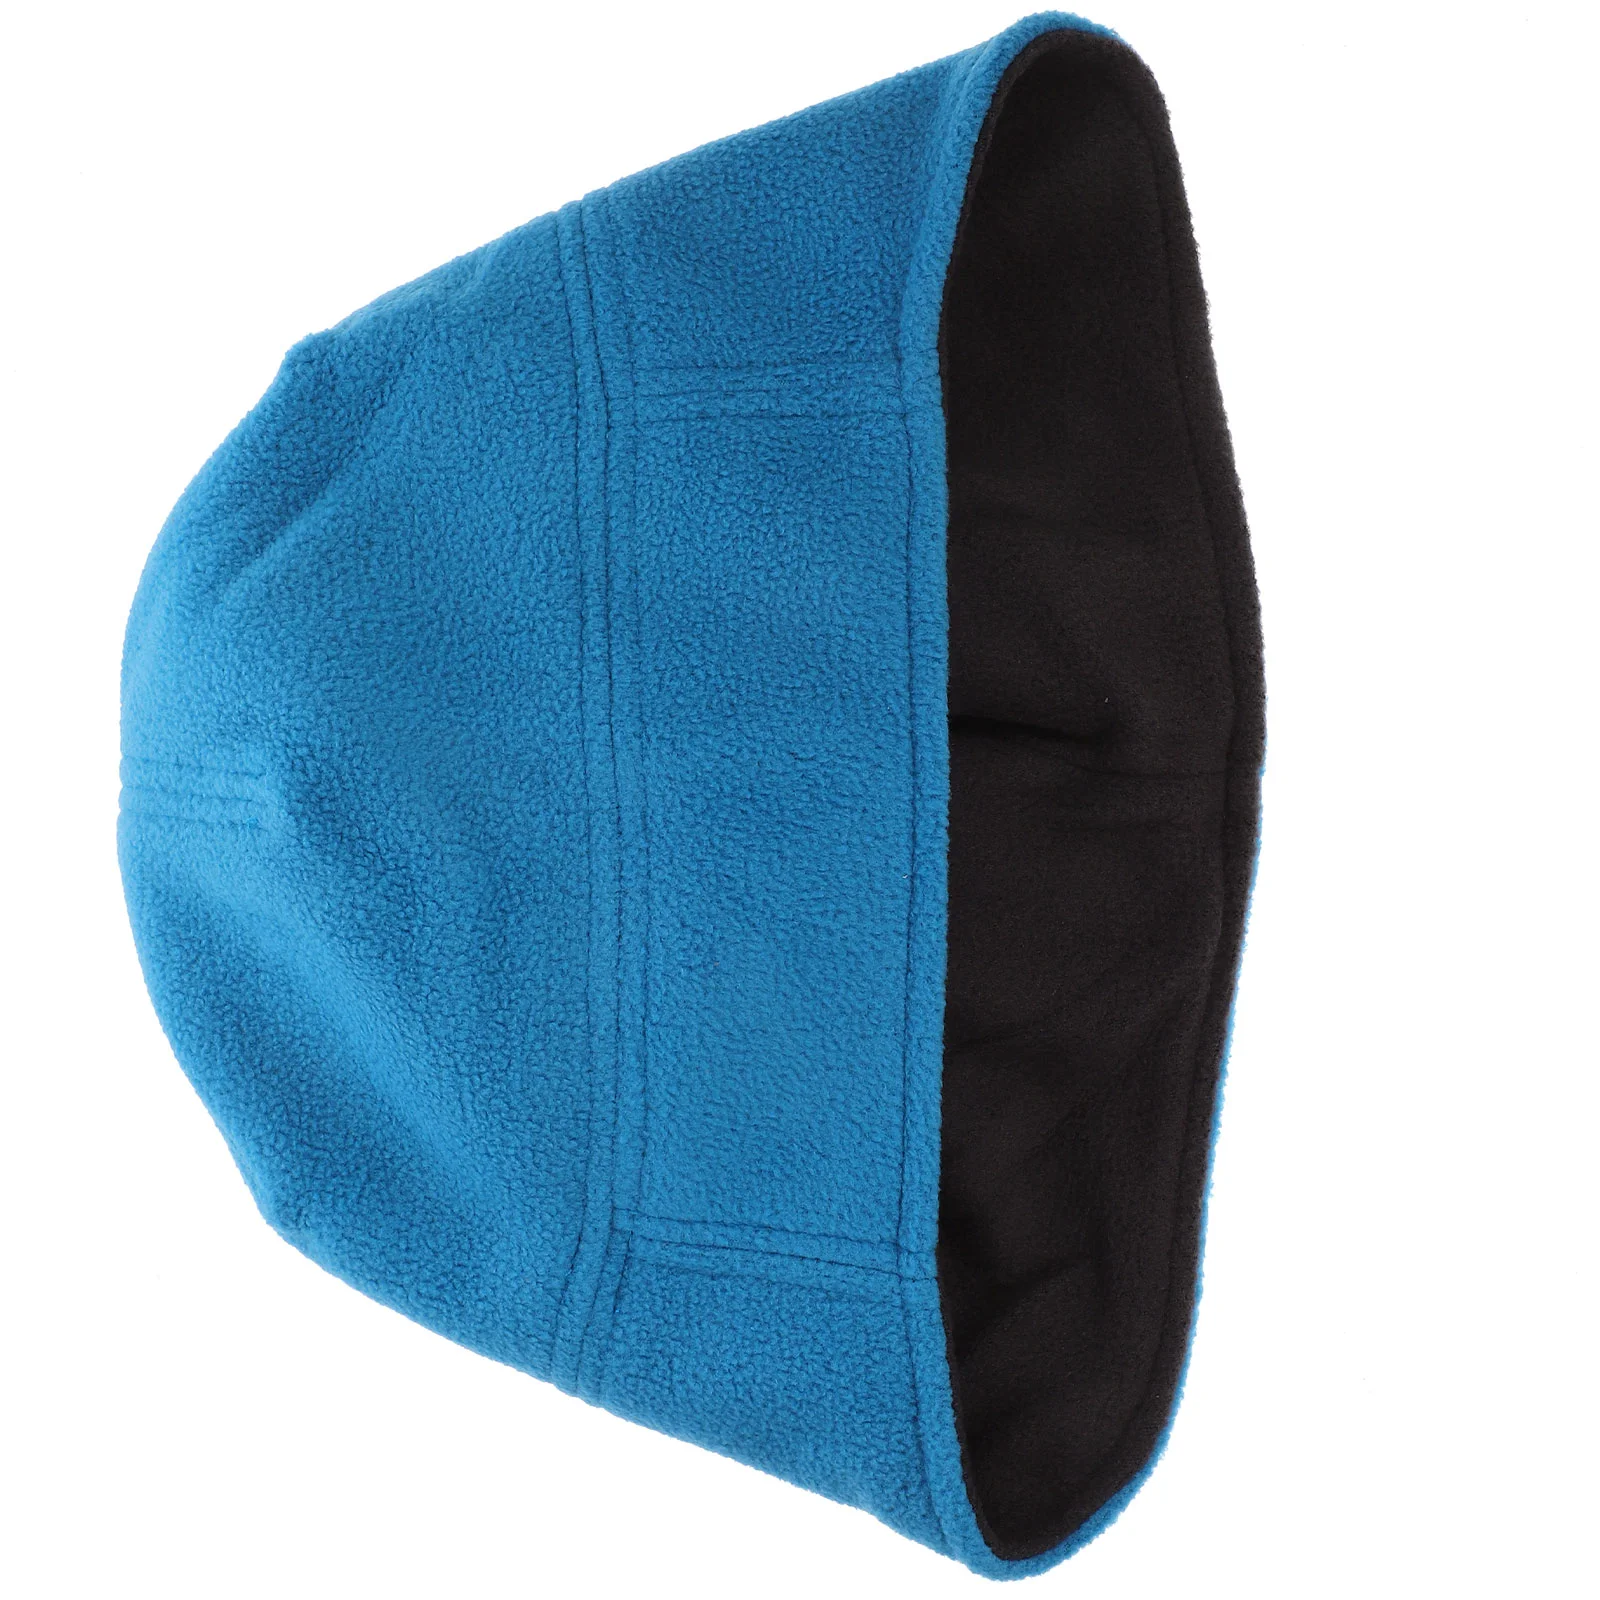 Зимняя уличная защитная шапка, утолщенная теплая шапка для верховой езды, зимний ветрозащитный головной аксессуар